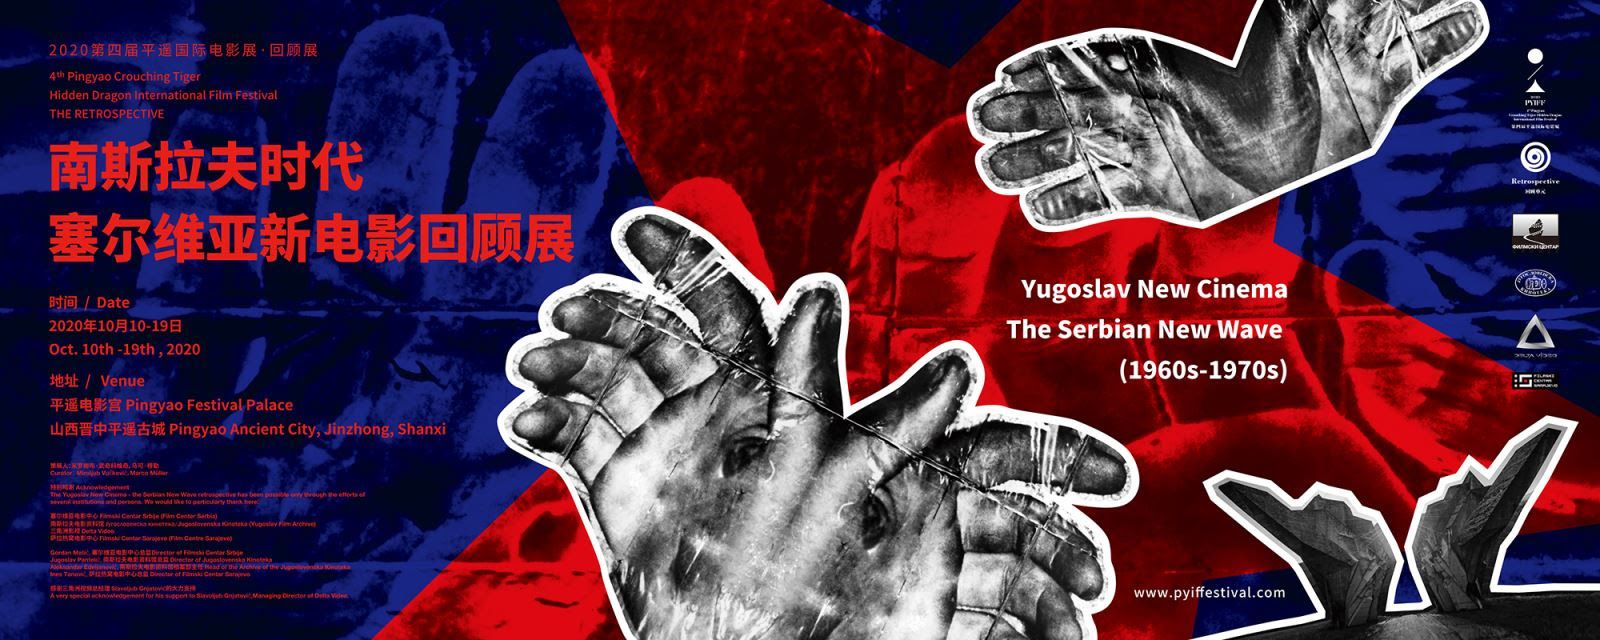 Retrospektiva „Novi jugoslovenski film – Srpski novi film” i „Oaza” Ivana Ikića na festivalu u Kini